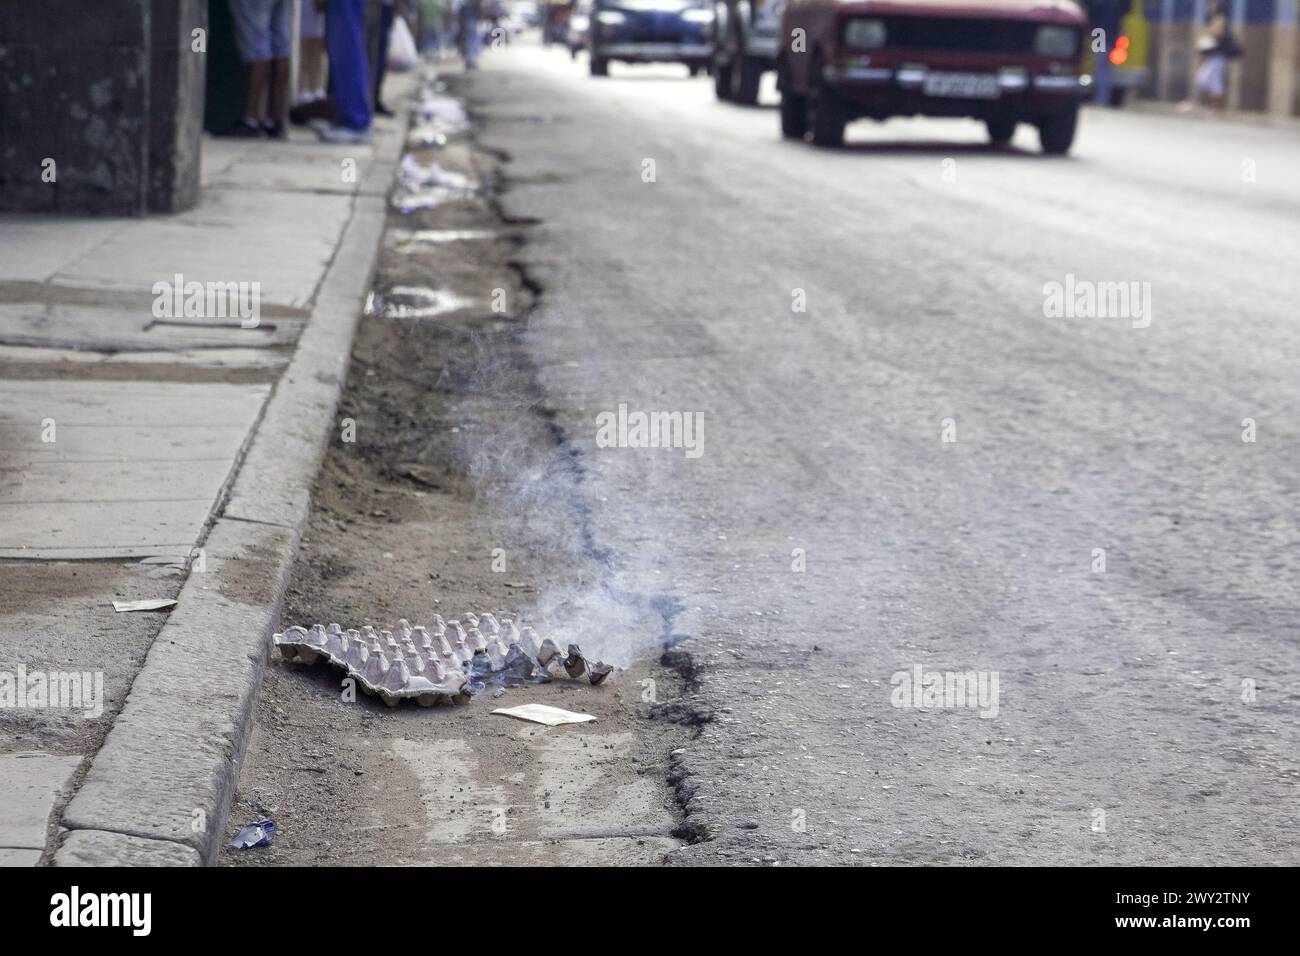 Cardboard burning in city street, Havana, Cuba Stock Photo